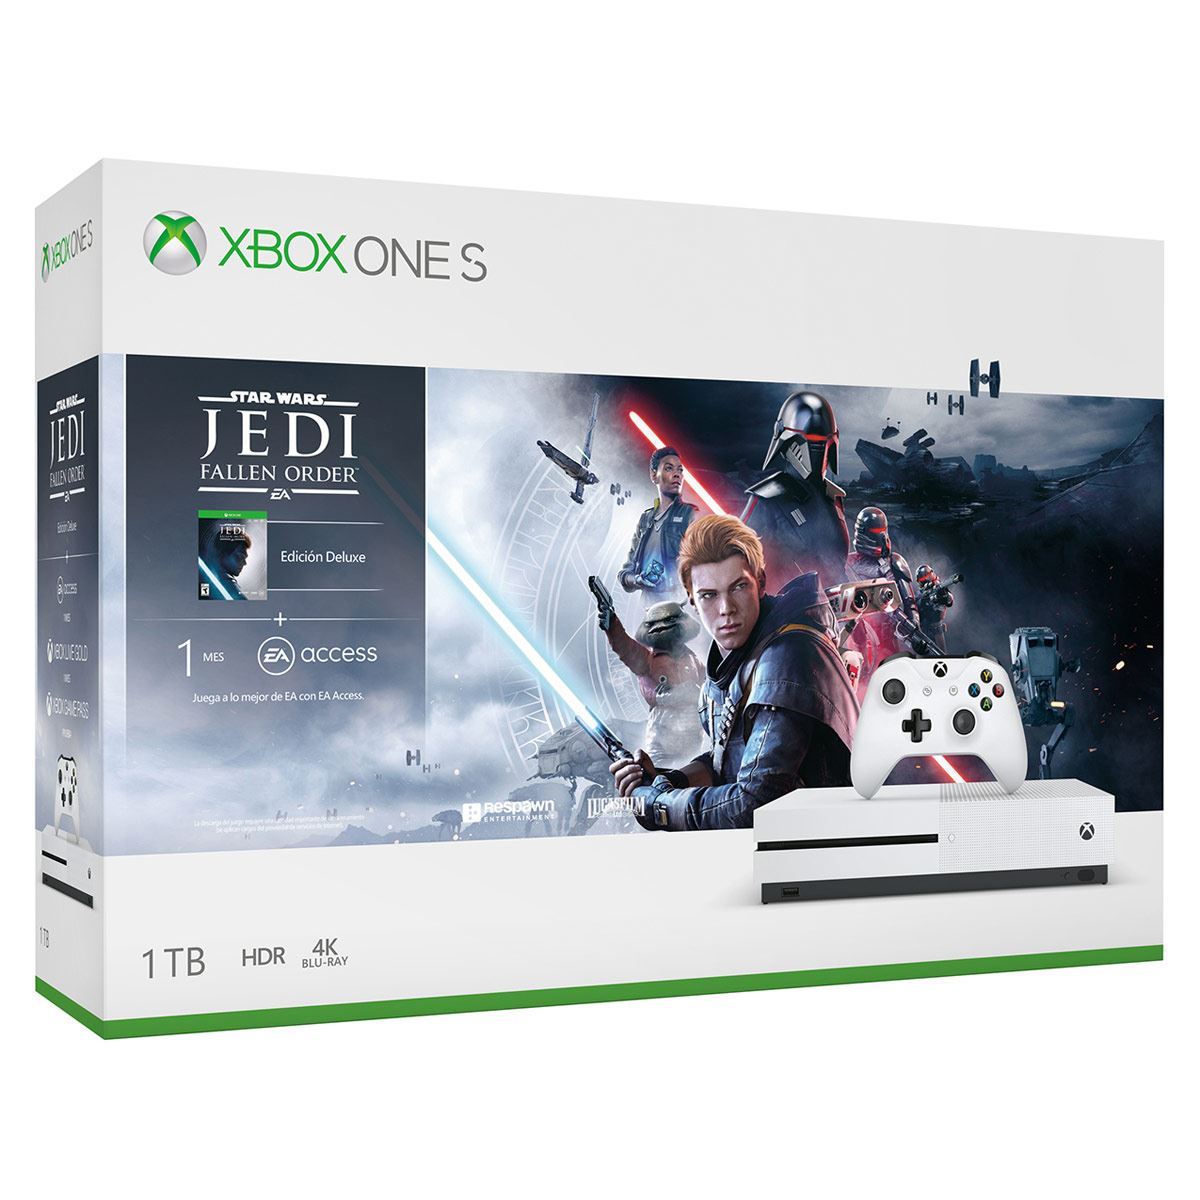 Consola Xbox One S 1 TB Star Wars Jedi + Hyperx